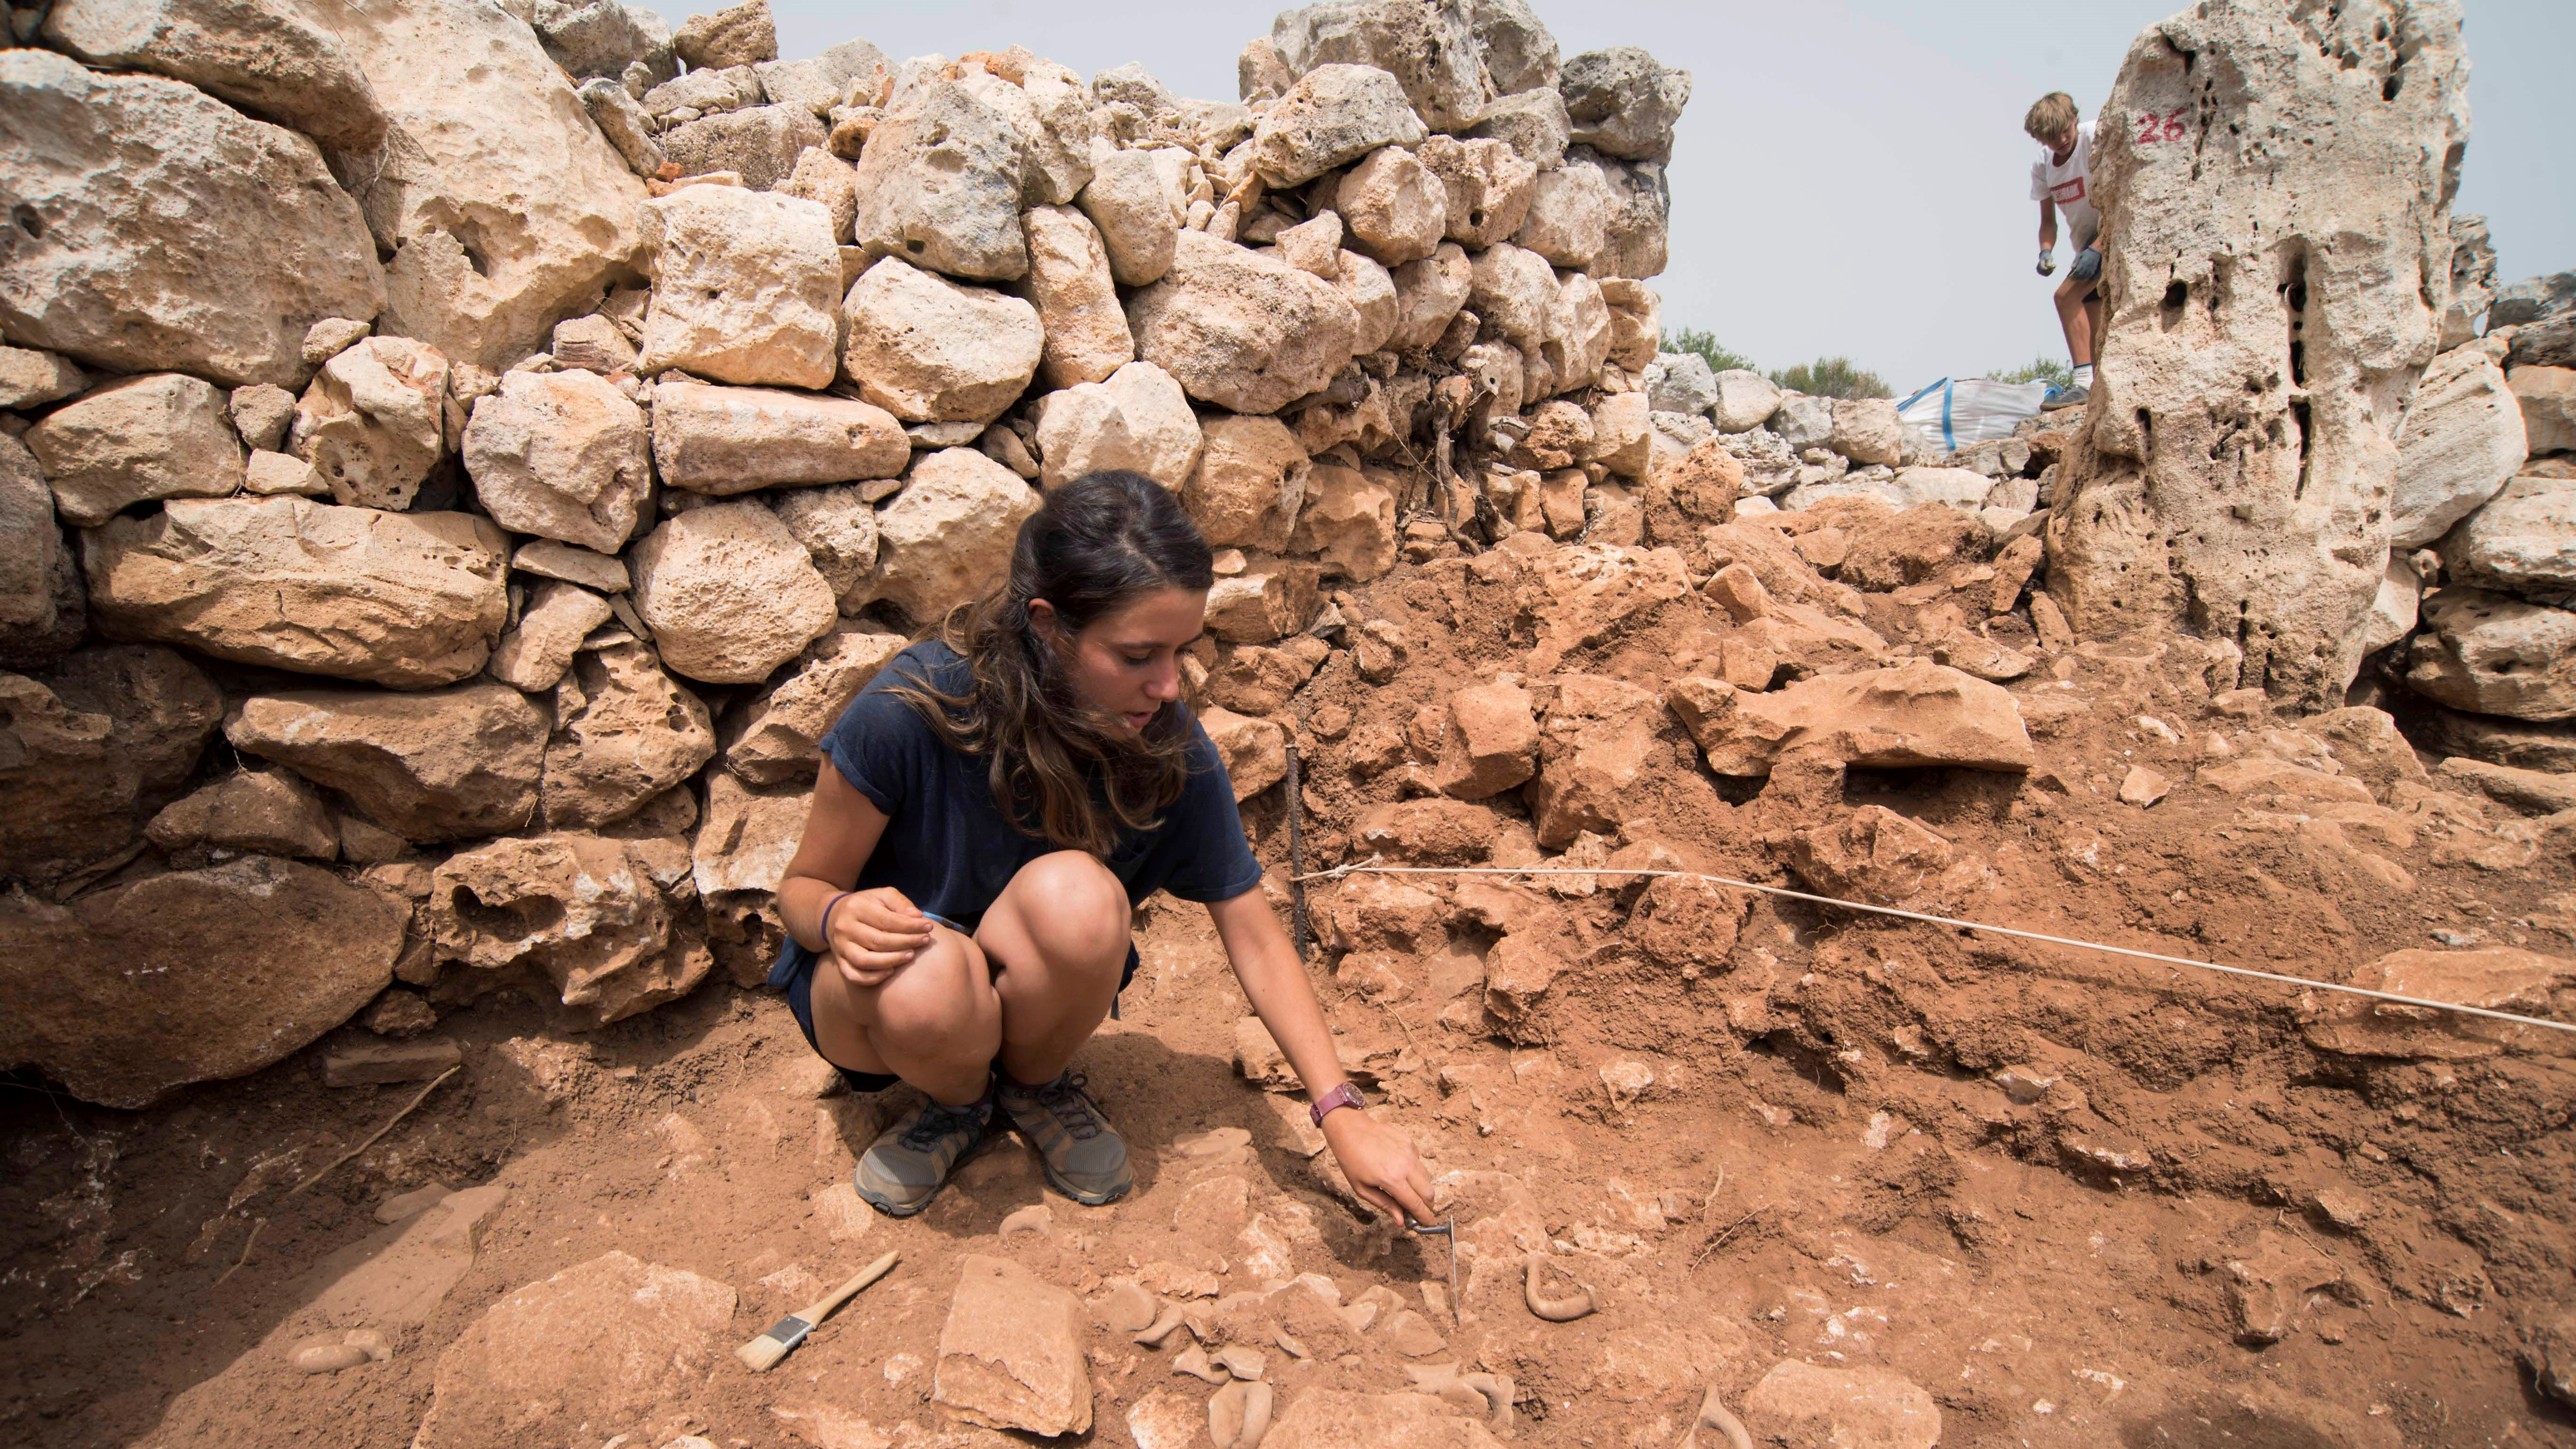 Hallan restos humanos en un yacimiento talayótico de Menorca